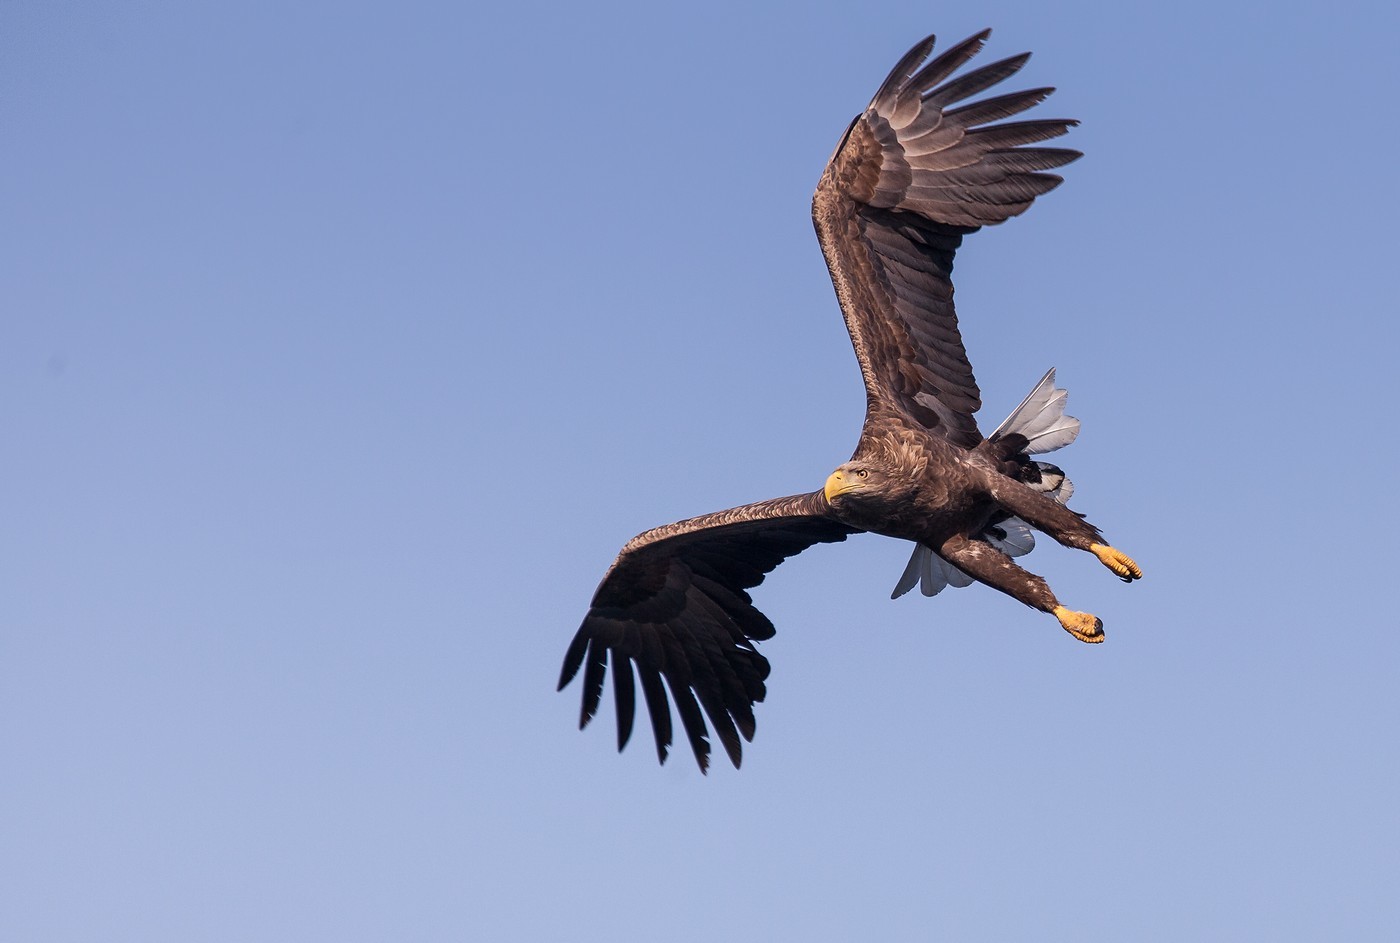 Dawb-tailed Eagle